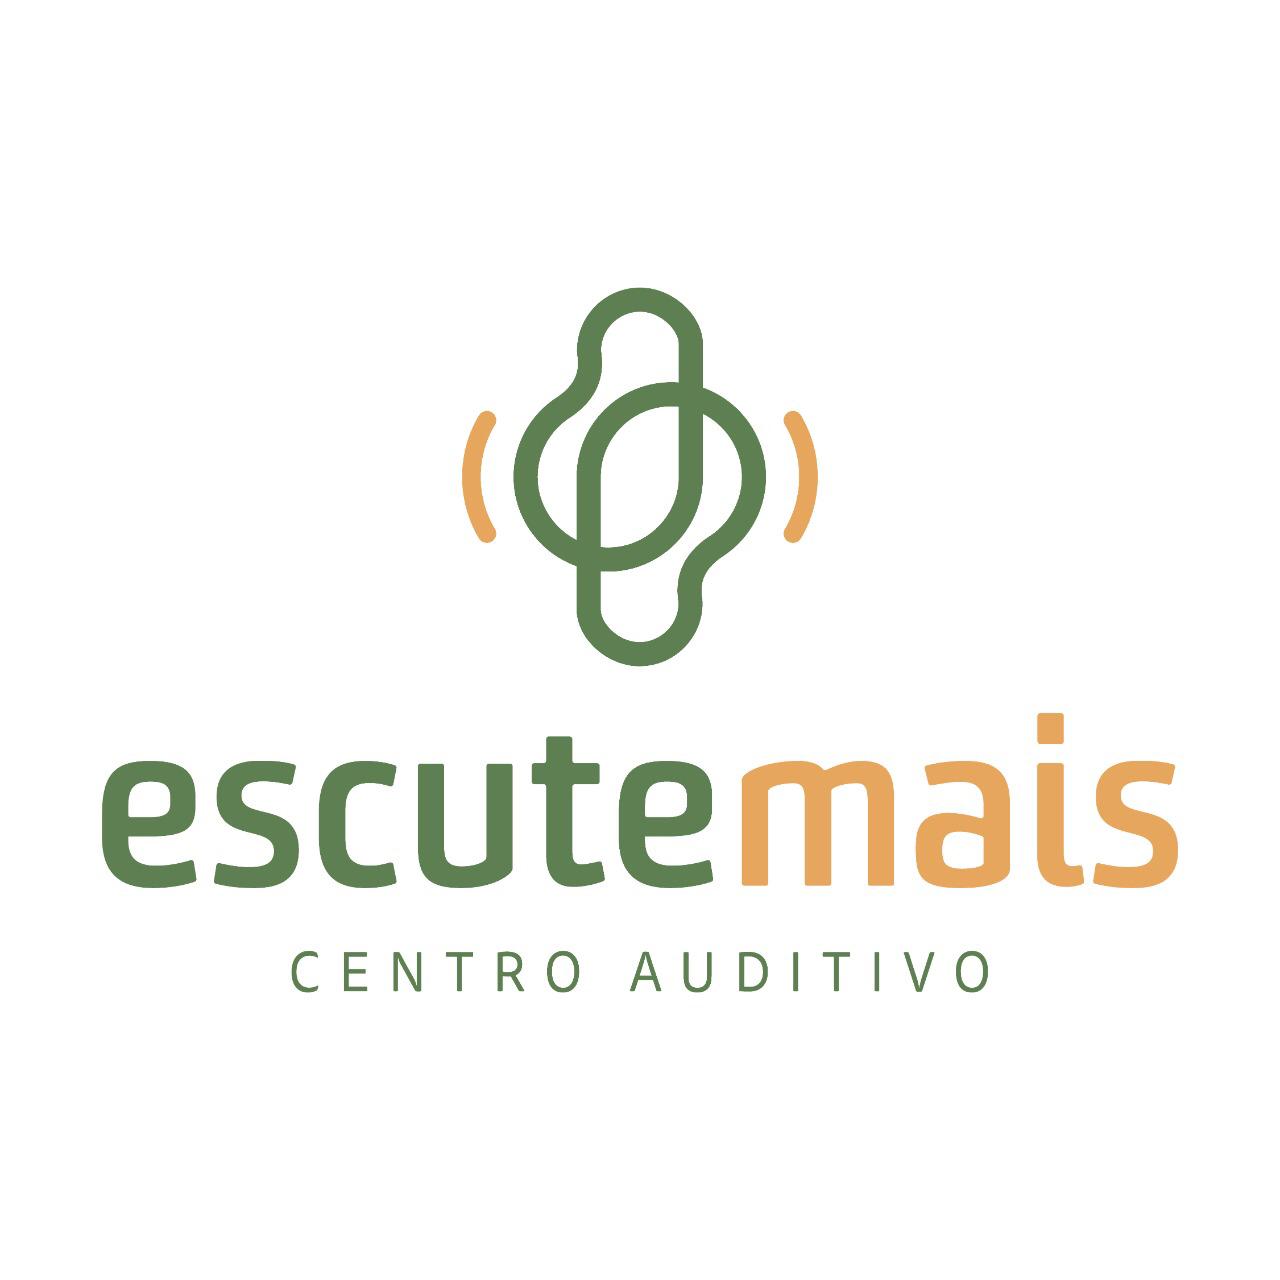 Centro Auditivo Escute Mais Ltda